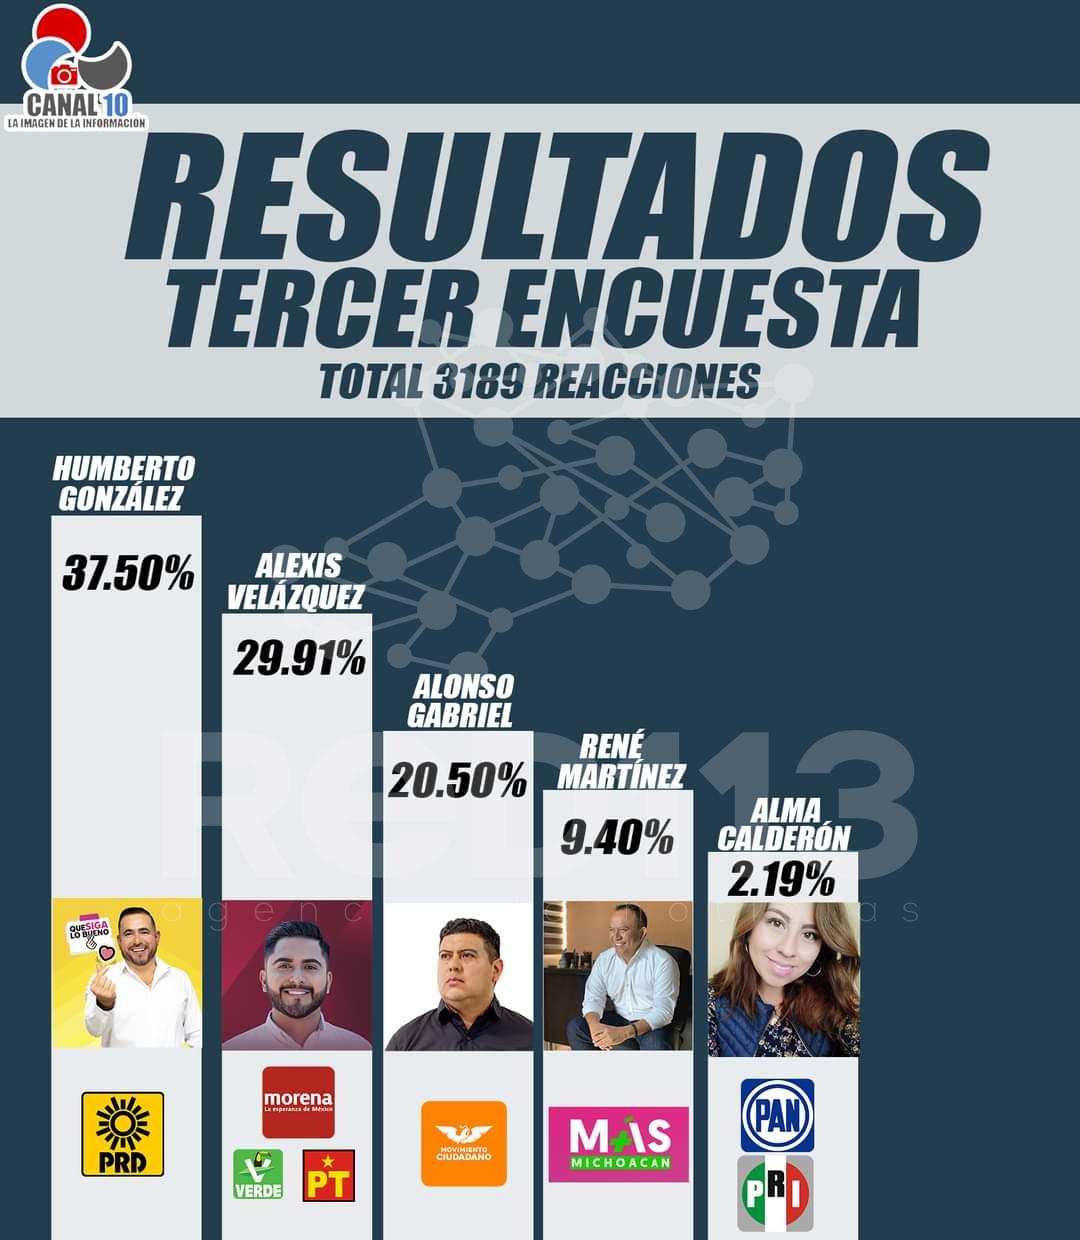 Humberto González se coloca entre las preferencias electorales en Huandacareo, encuestas dan triunfo